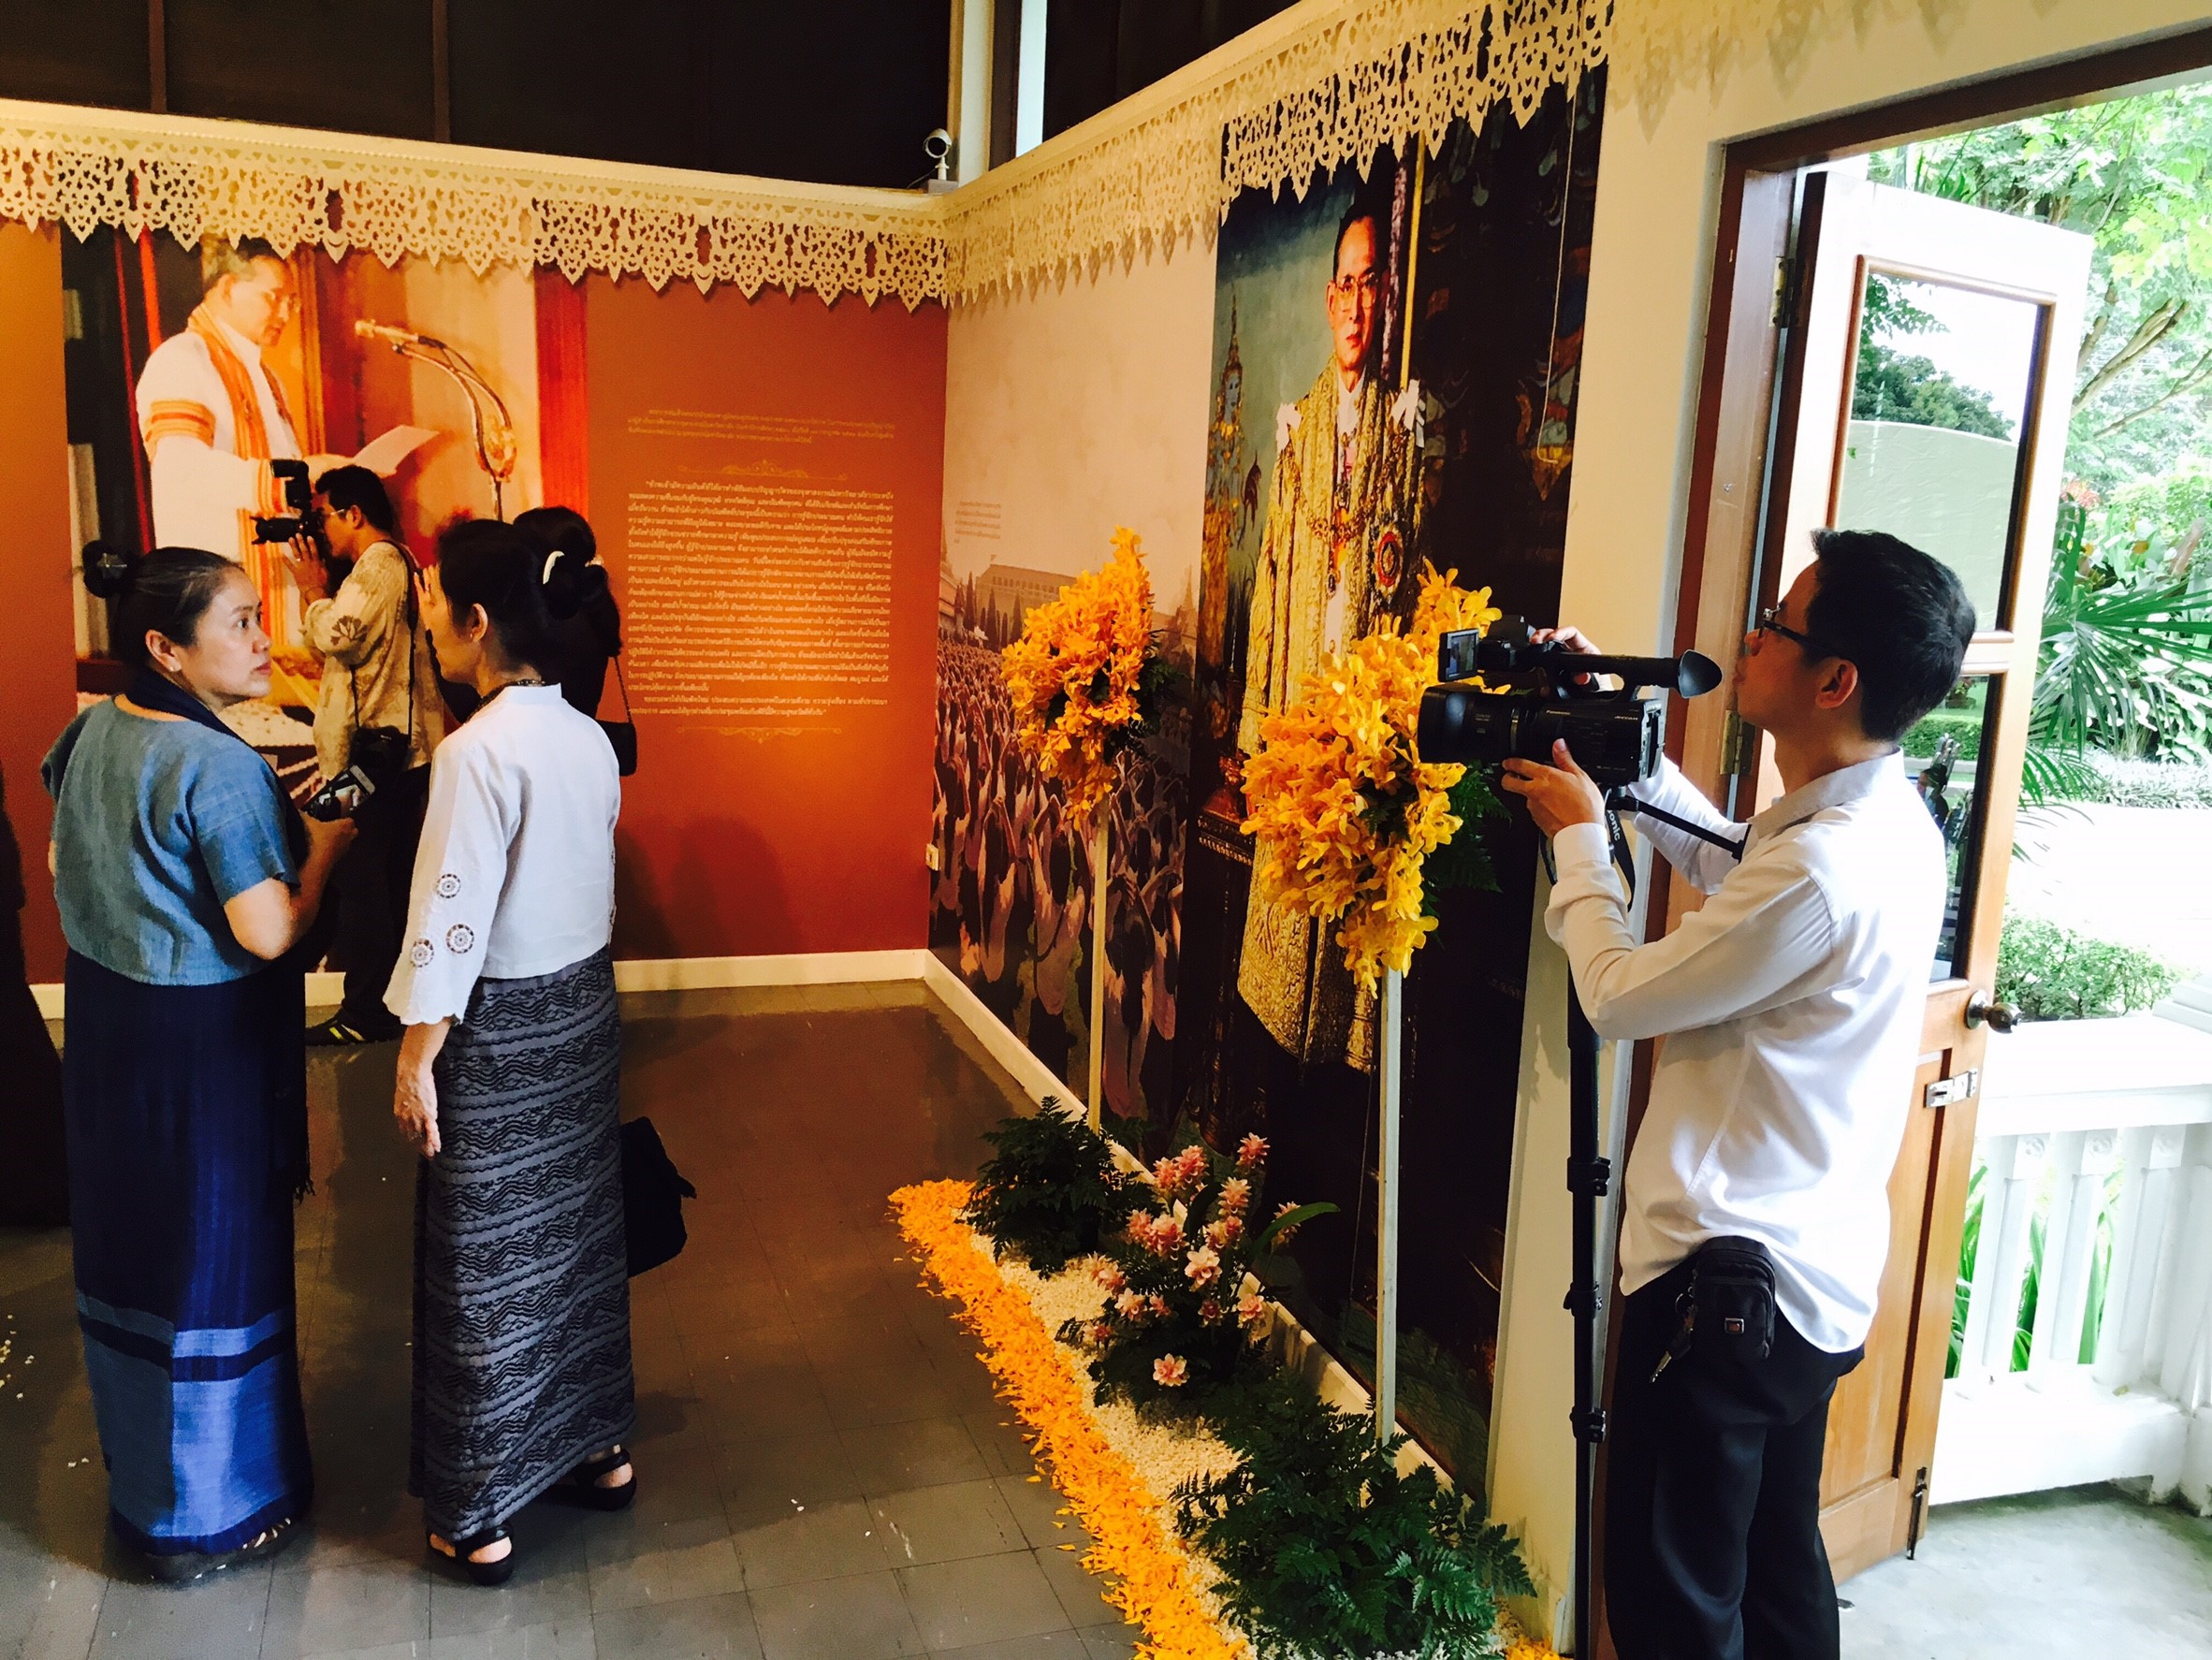 ร่วมงานวันคล้ายวันประสูติพระราชชายาเจ้าดารารัศมี และพิธีเปิดนิทรรศการ เรื่อง จงรักภักดี ในวันเสาร์ที่ 26 สิงหาคม 2560